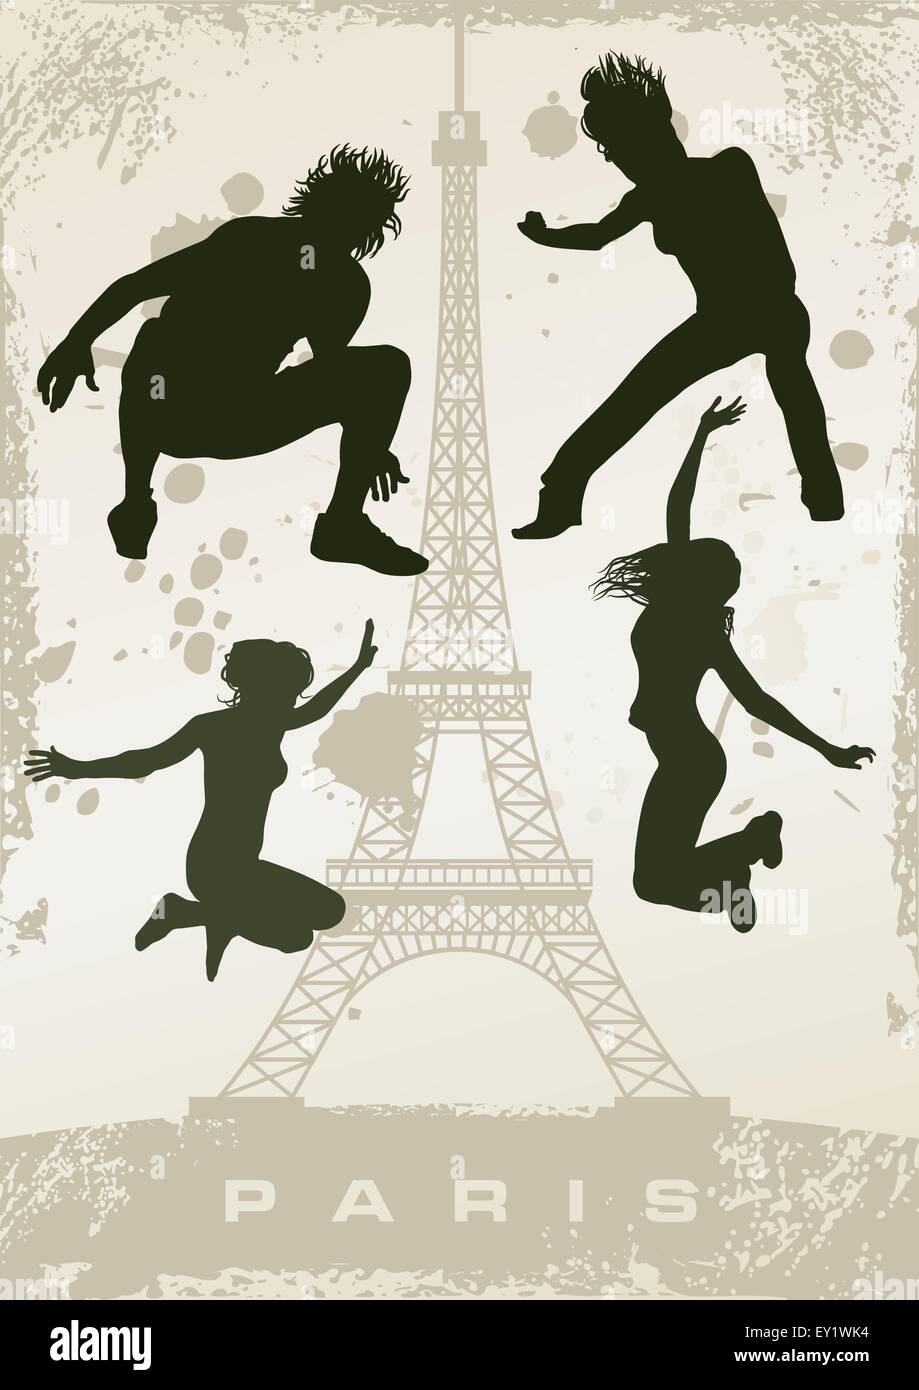 Carte postale Paris grunge - vector illustration Illustration de Vecteur